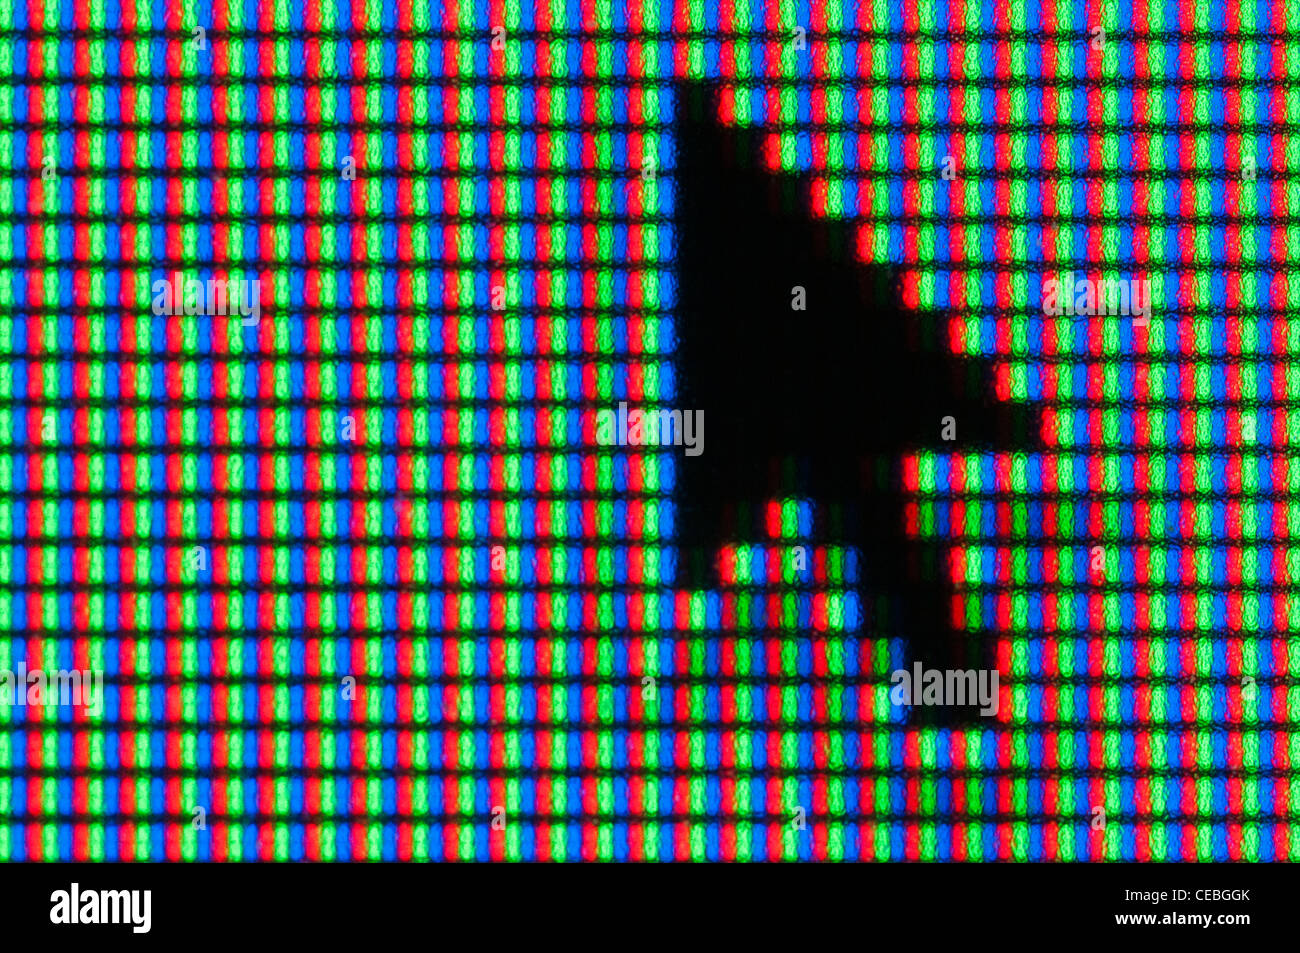 Primo piano di un TFT a schermo del computer che mostra il 3-additive colour schema di sintesi utilizzato, con un punto di colore per pixel Foto Stock